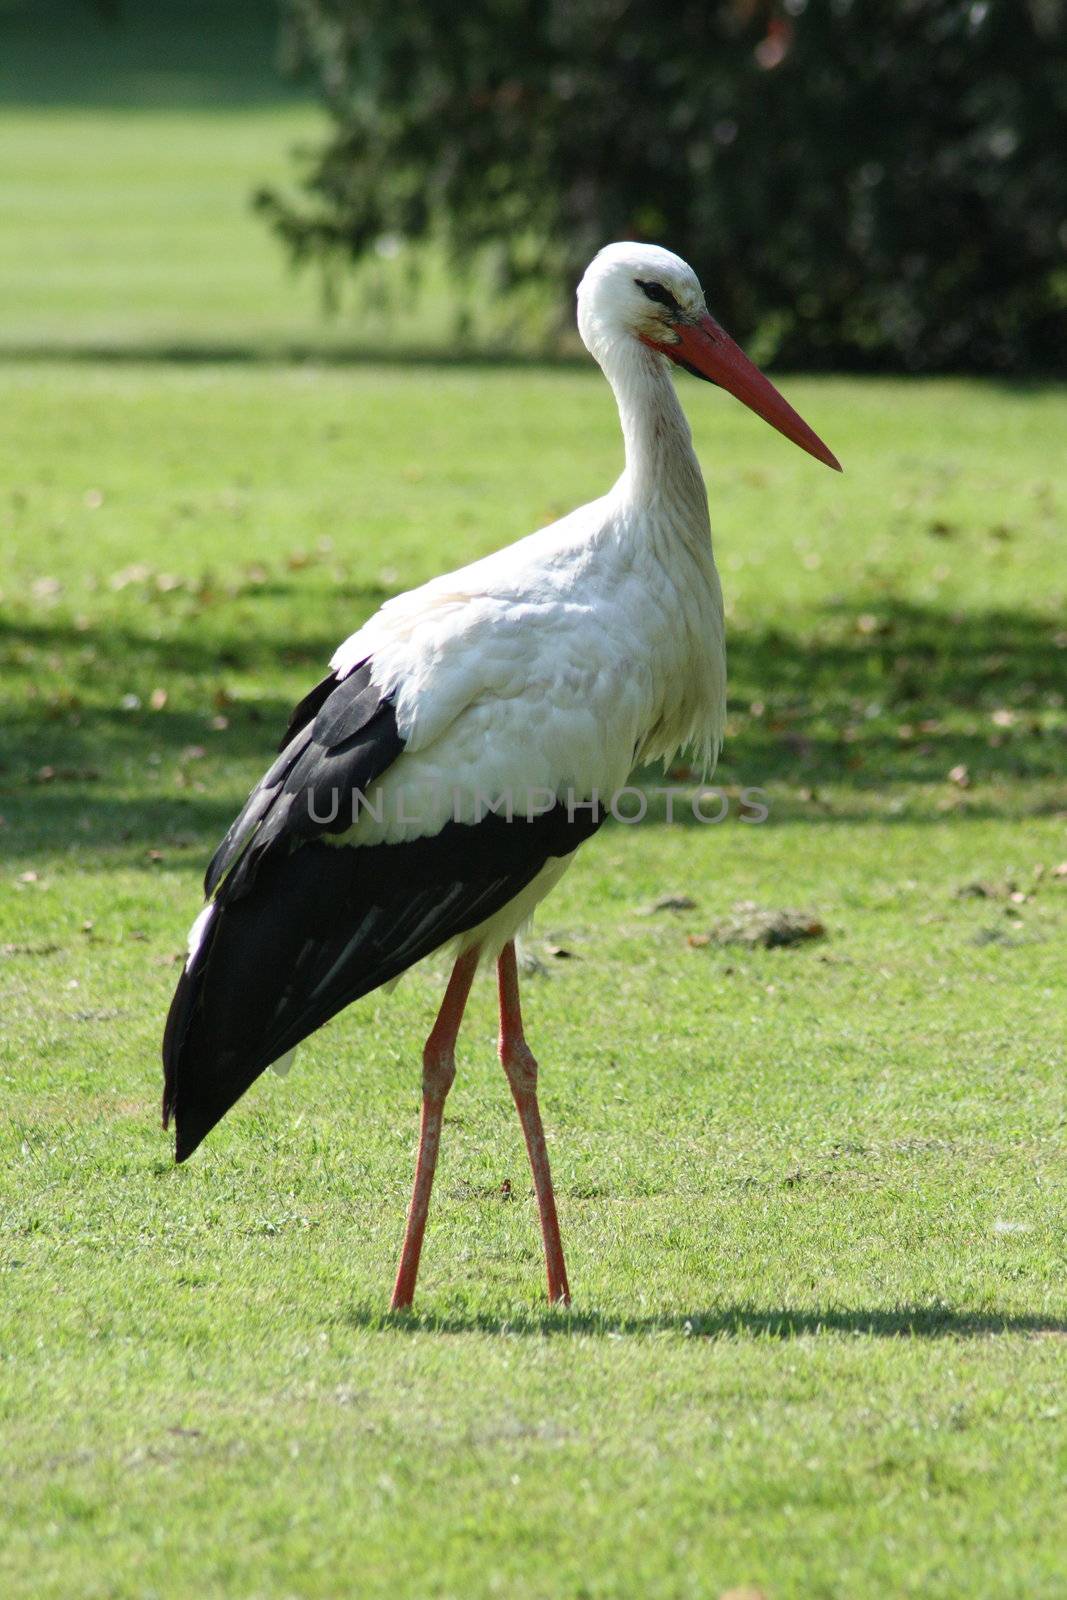 Weißstorch schreitet auf einer grünen Wiese umher	
White Stork walks around on a green meadow